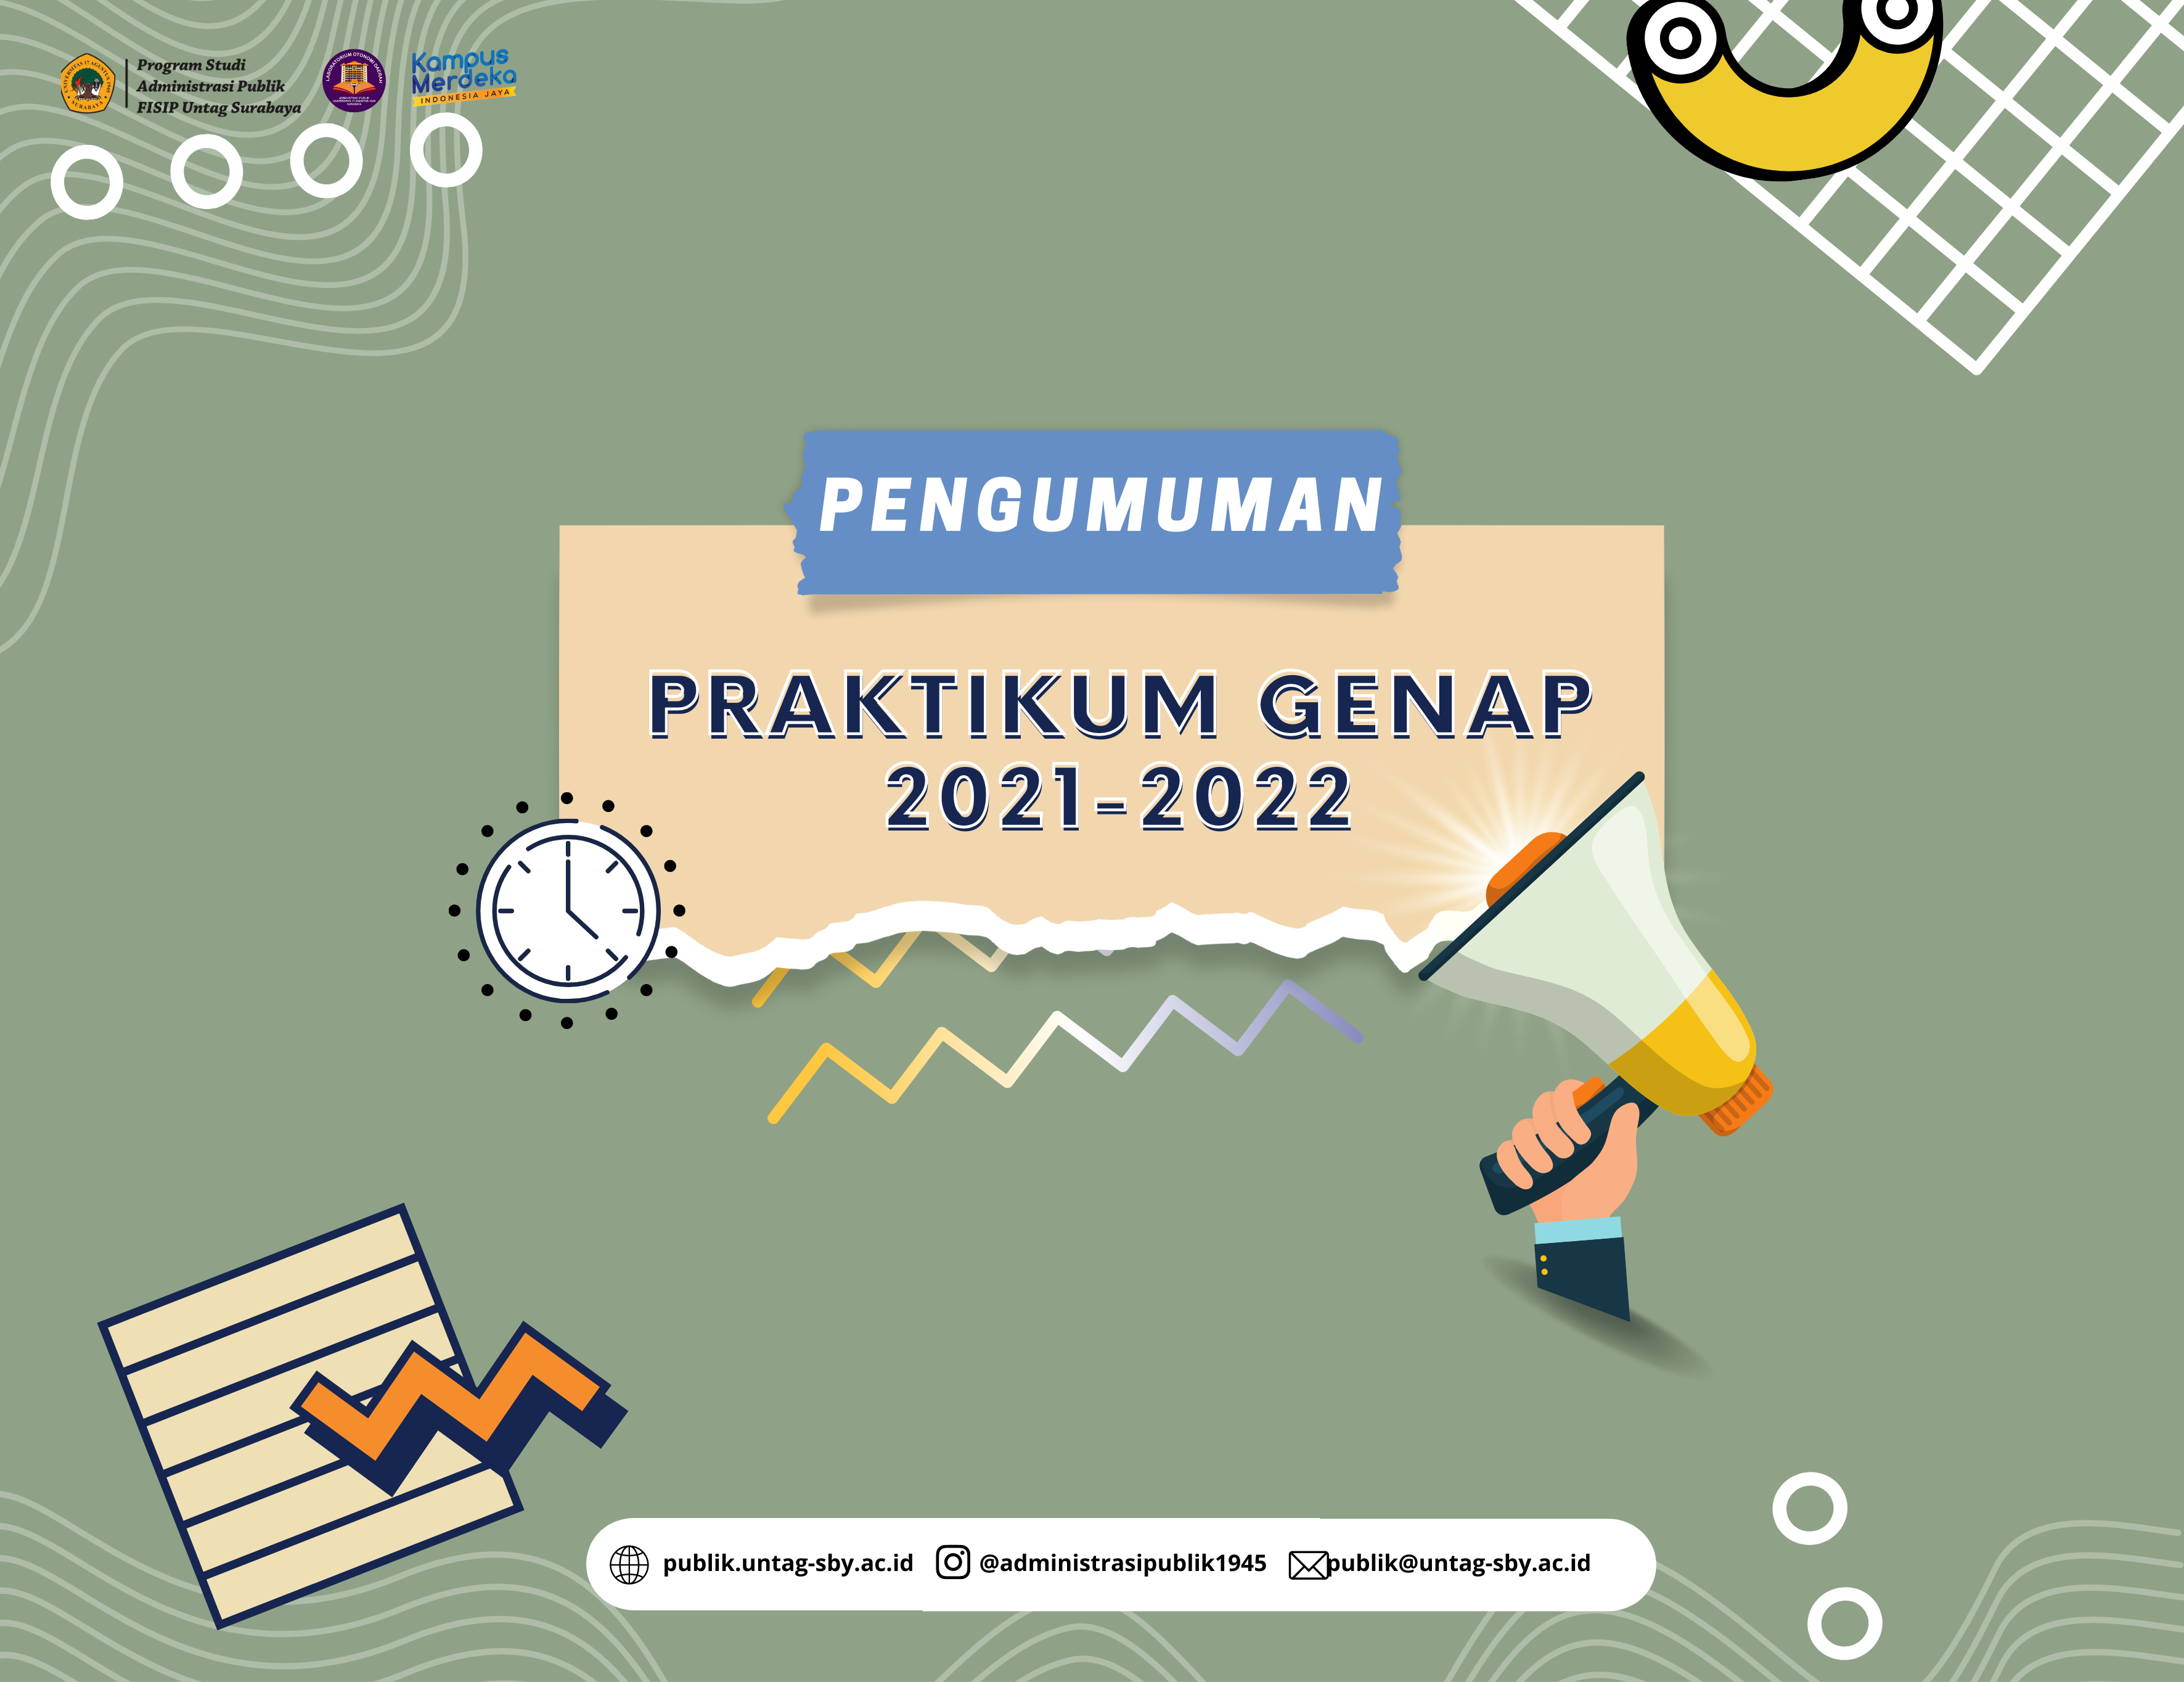 PENGUMUMAN PRAKTIKUM GENAP 2021-2022